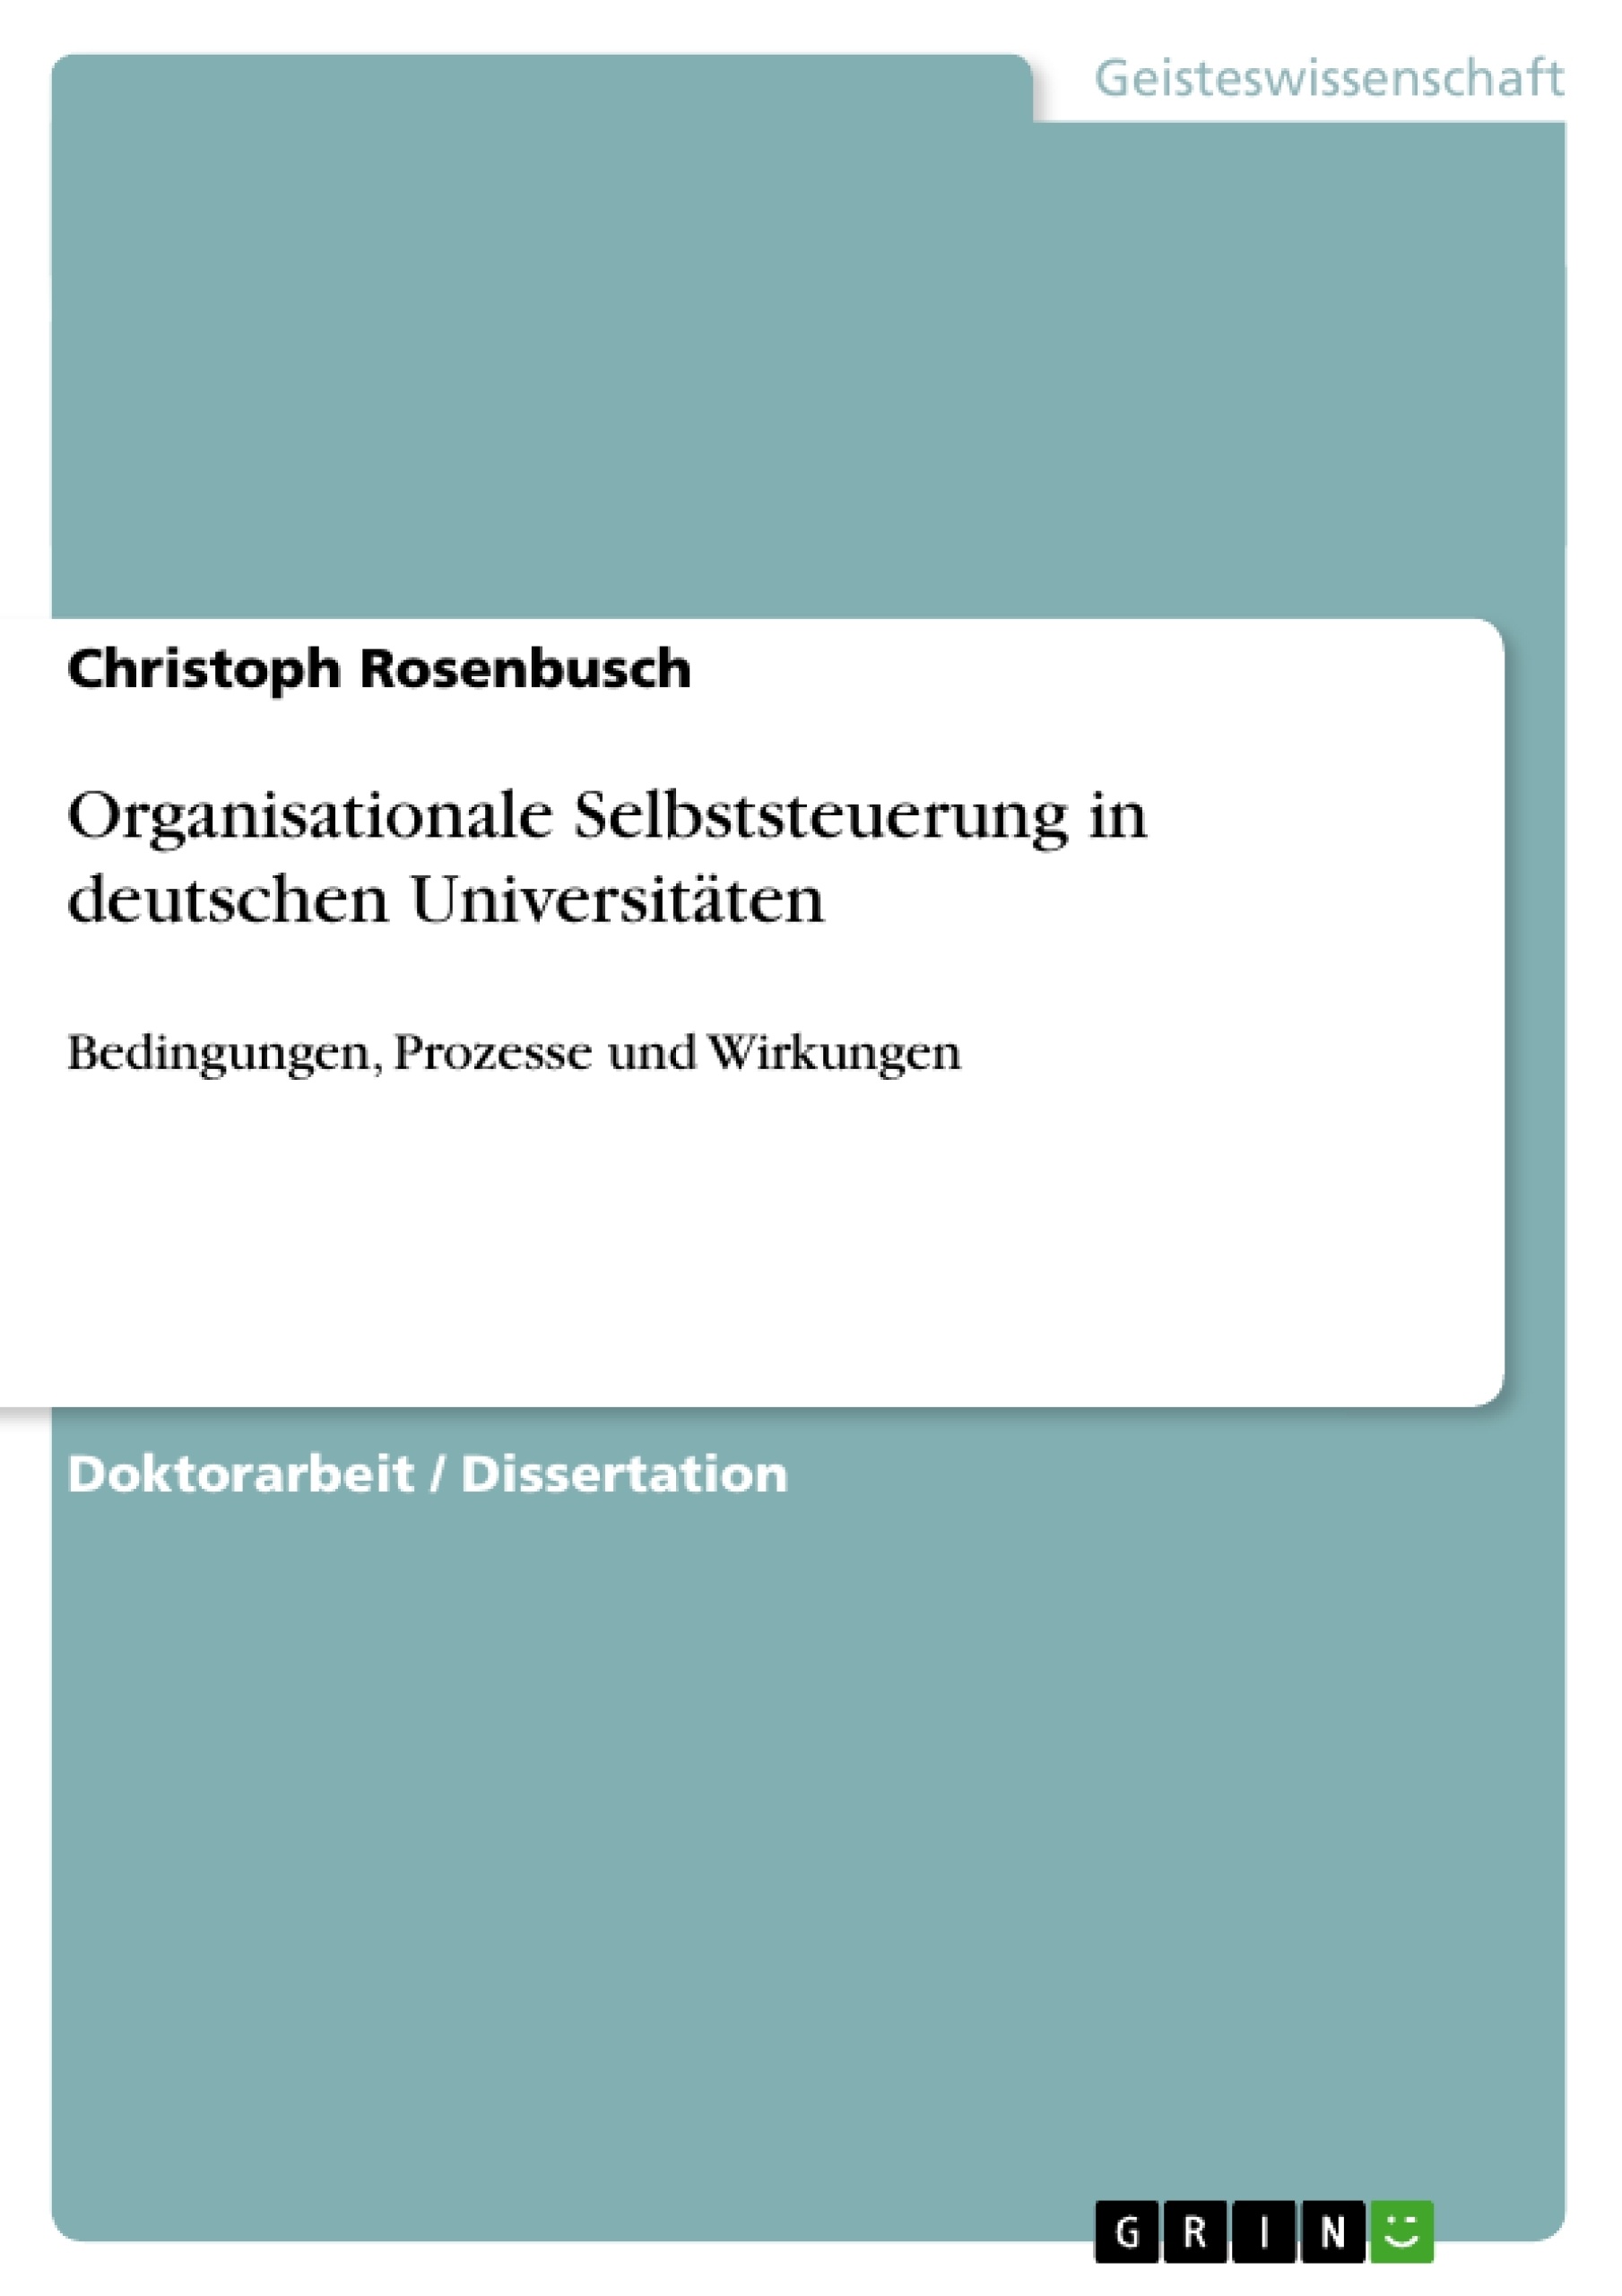 Title: Organisationale Selbststeuerung in deutschen Universitäten